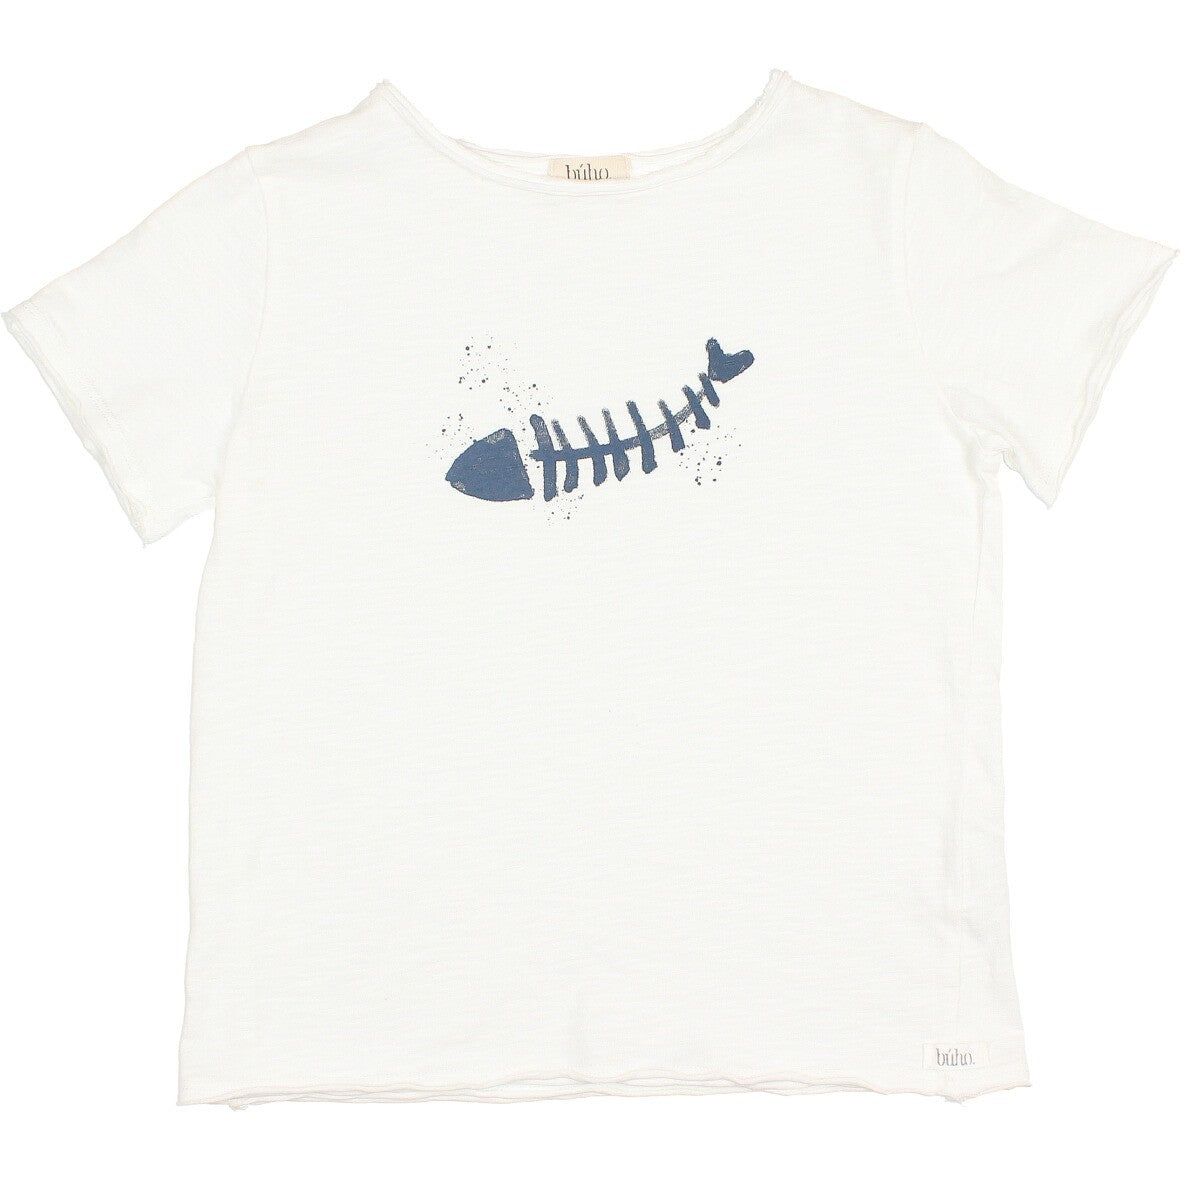 Camiseta pez